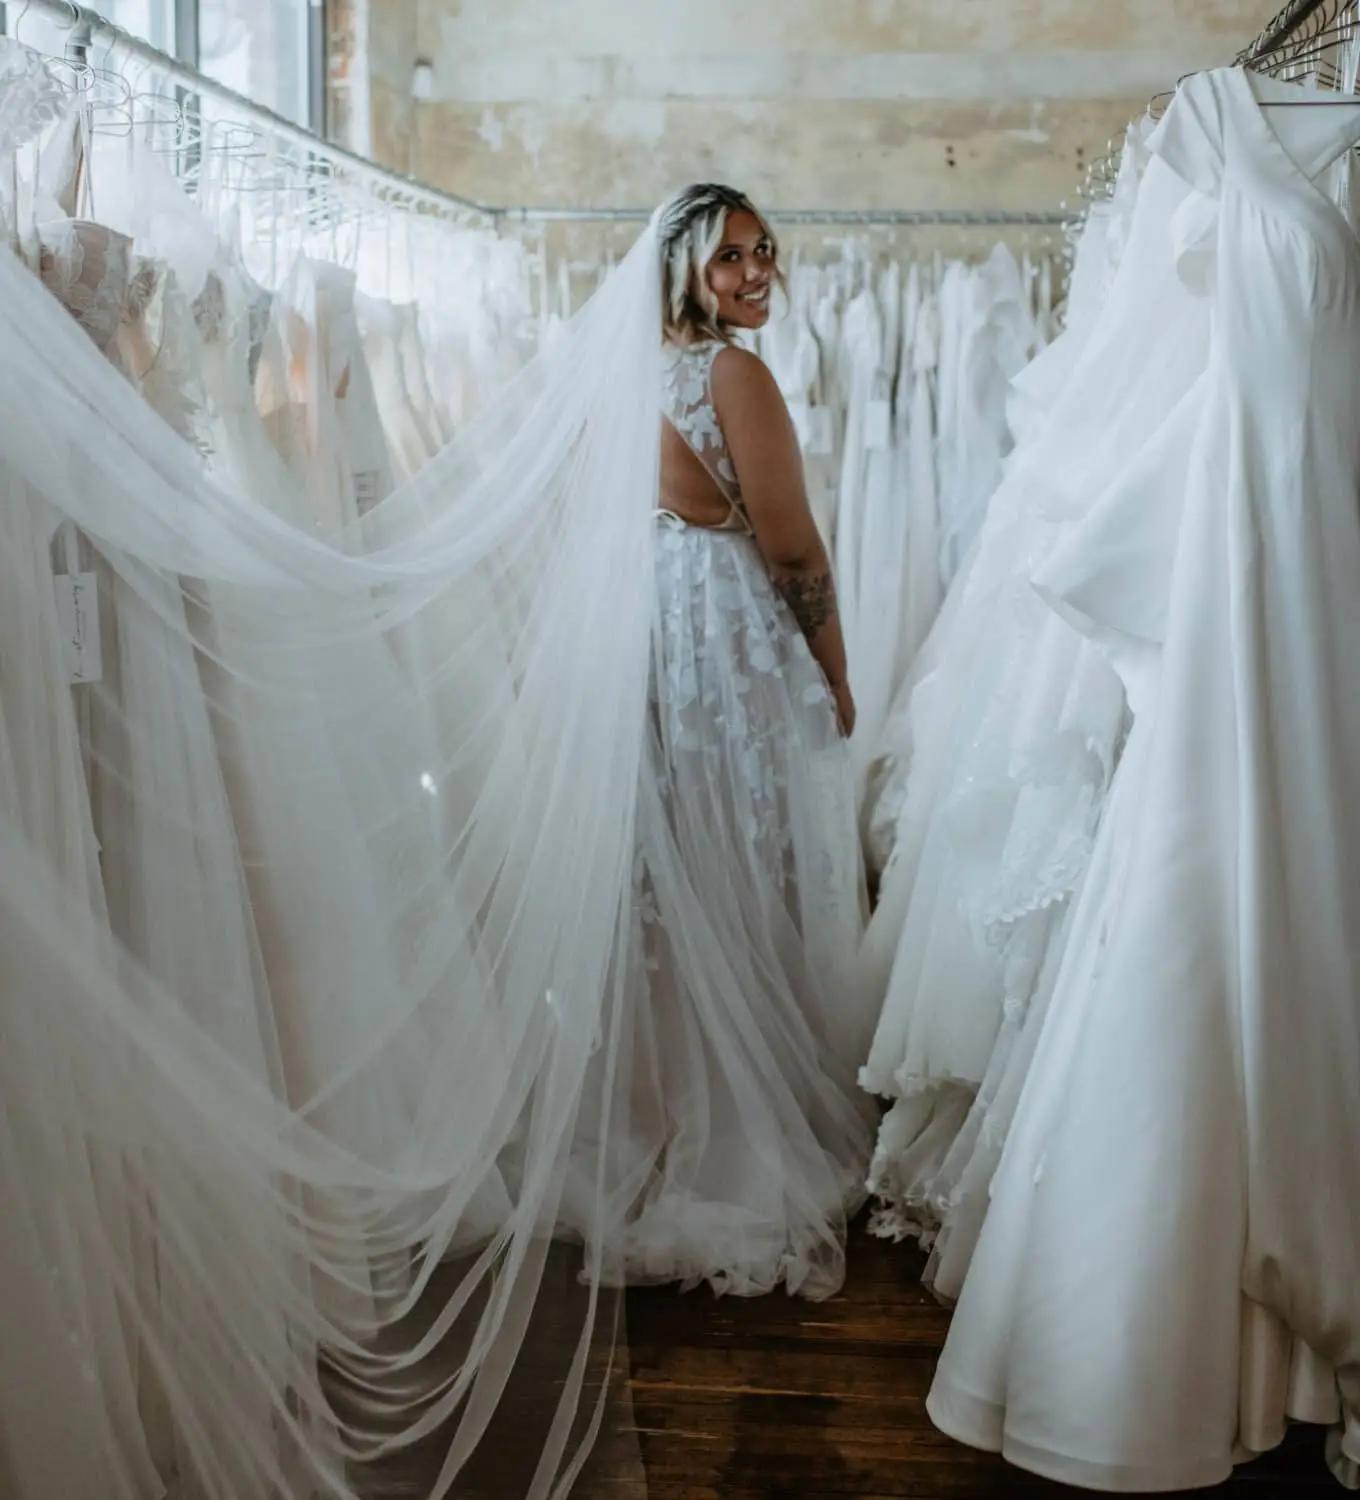 Model wearing a white bridal dress